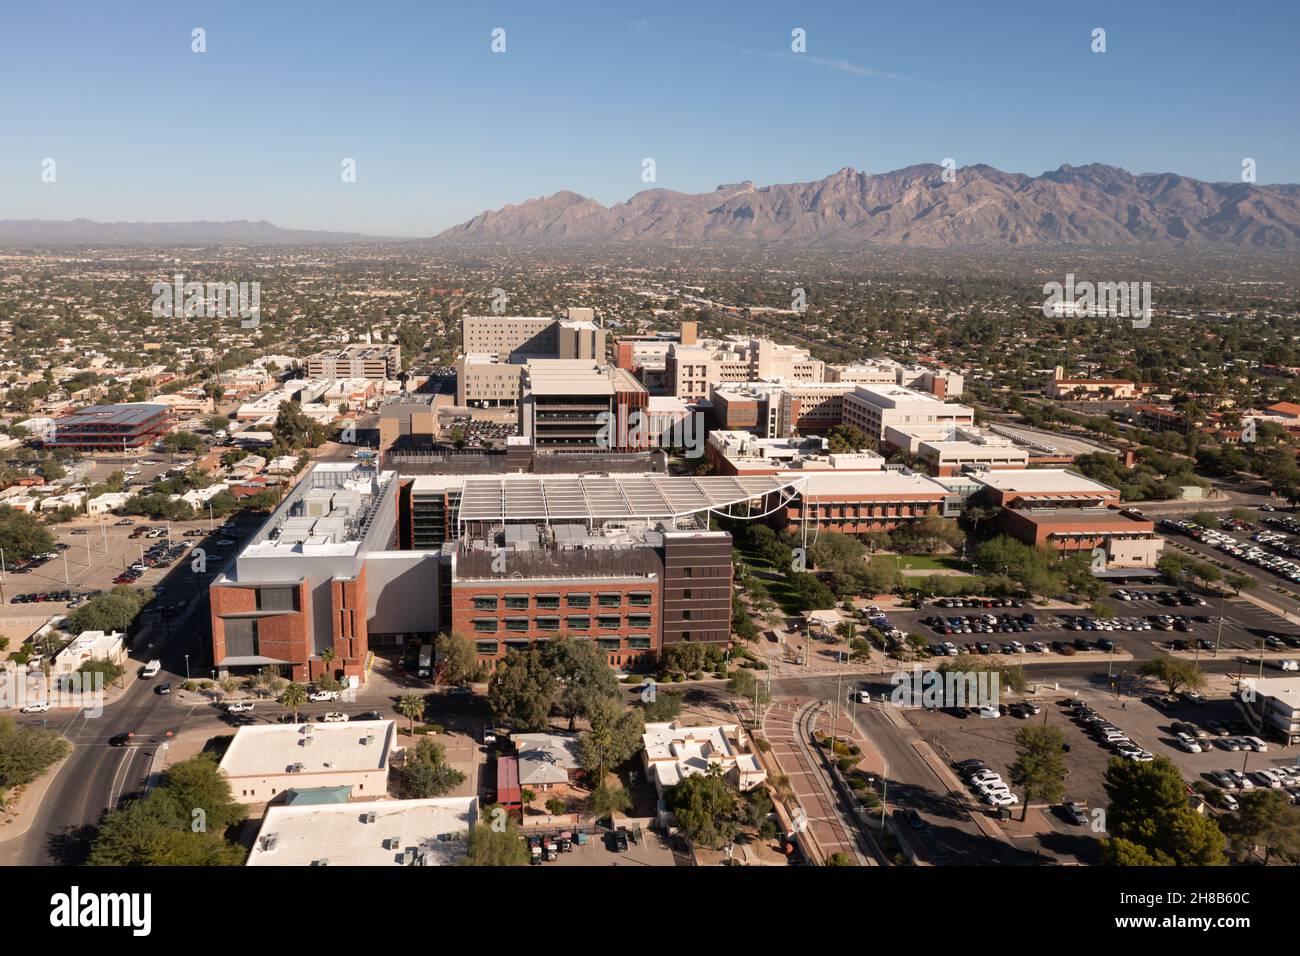 Luftaufnahme eines großen Krankenhauses in Tucson Arizona, Vogelbeobachtung. Stockfoto